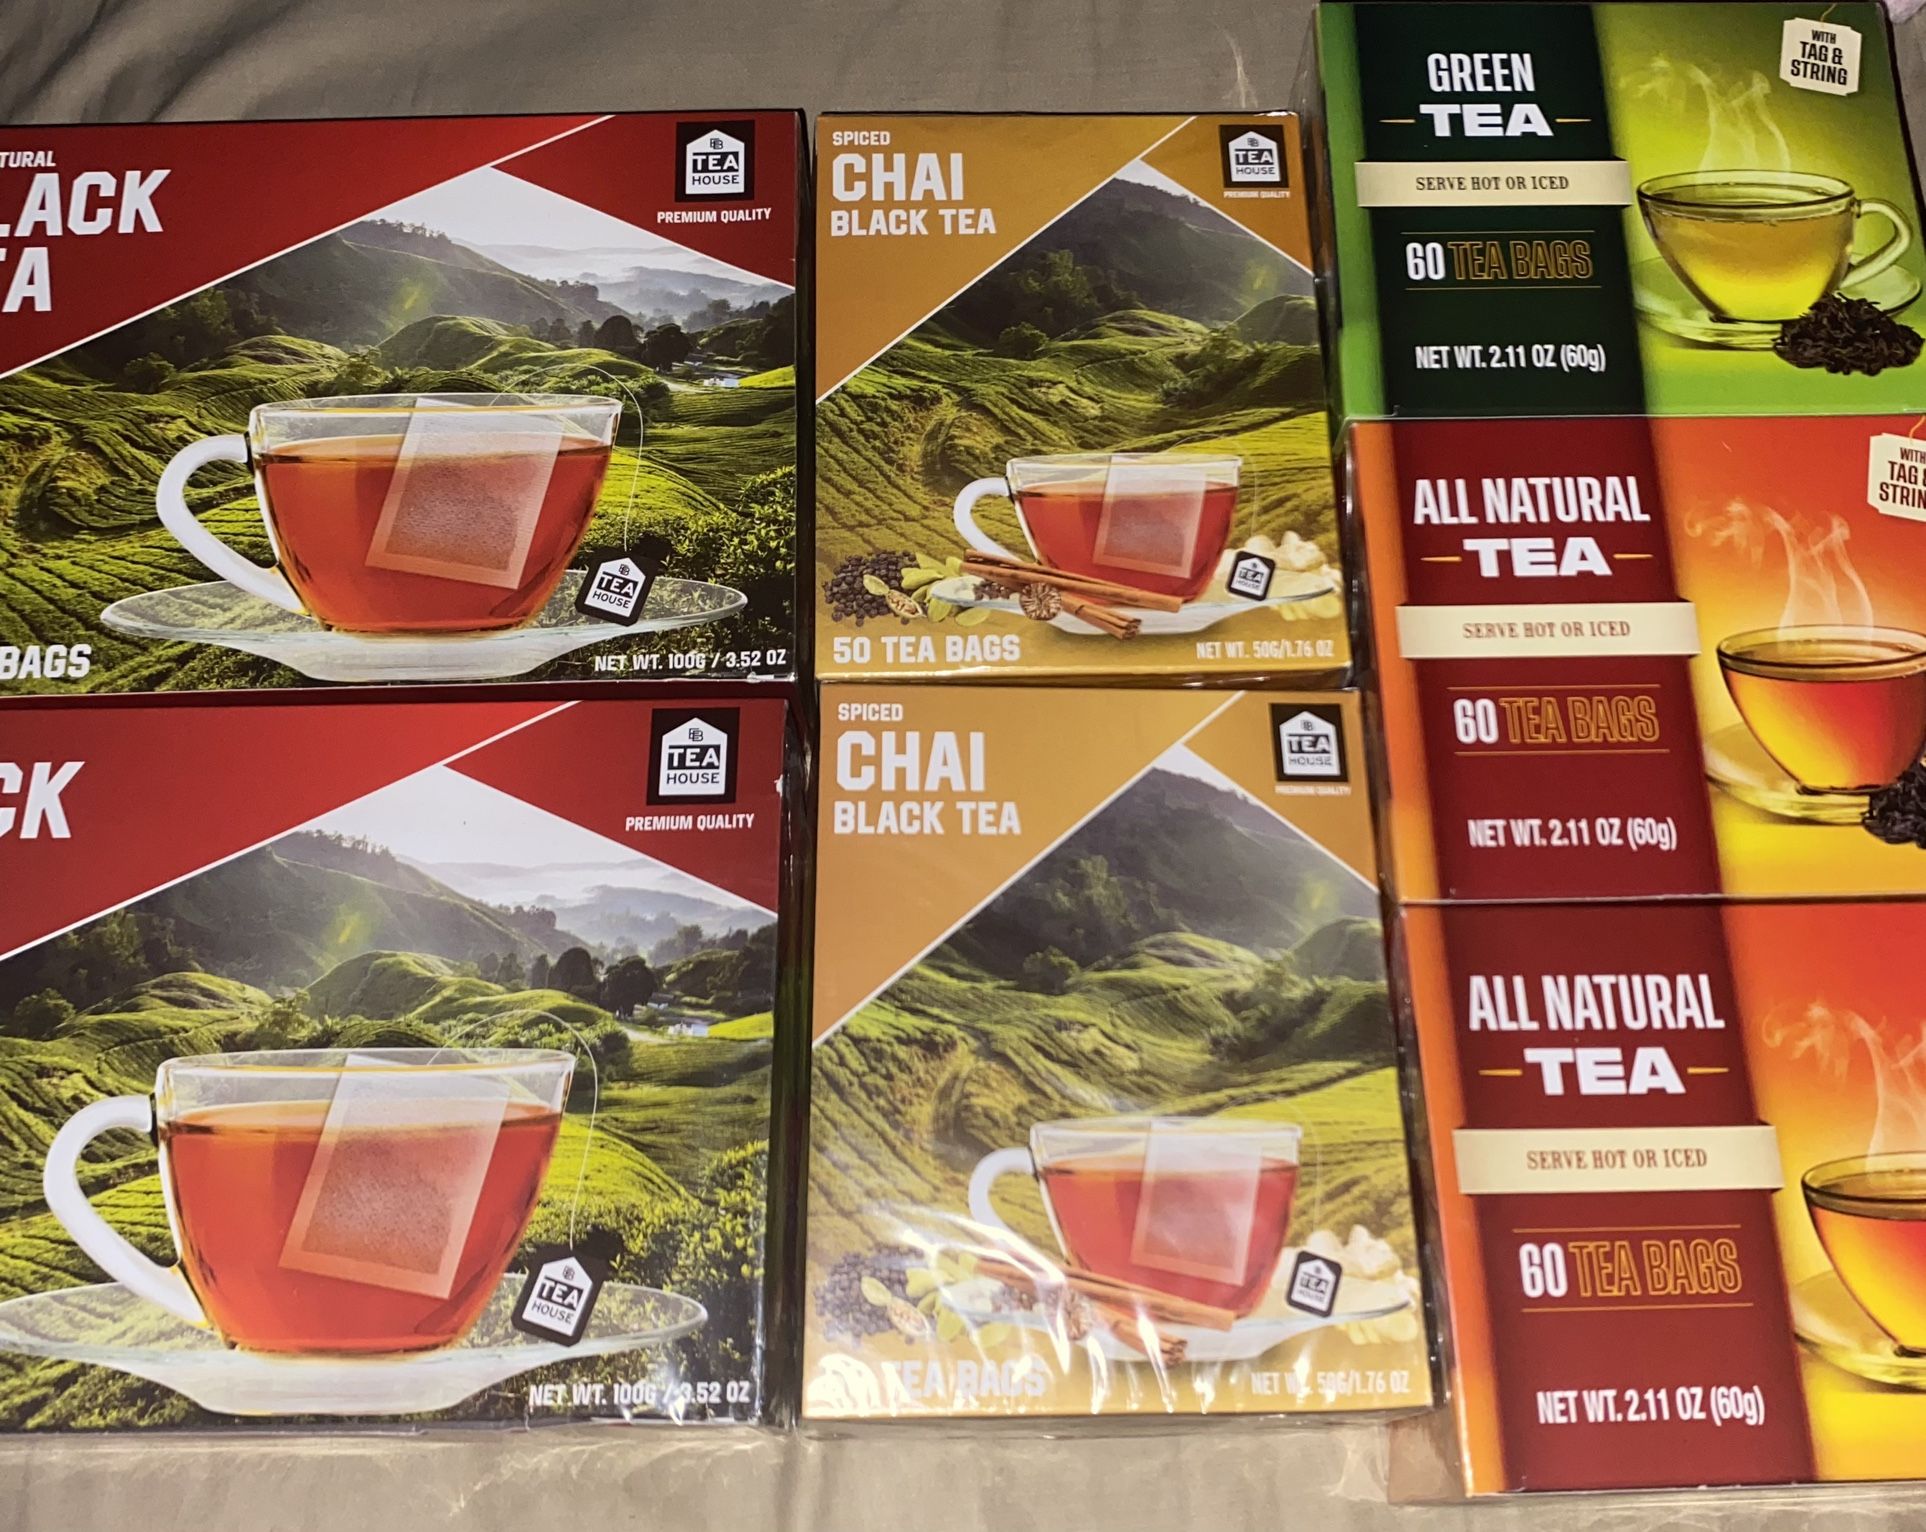 All Natural Tea